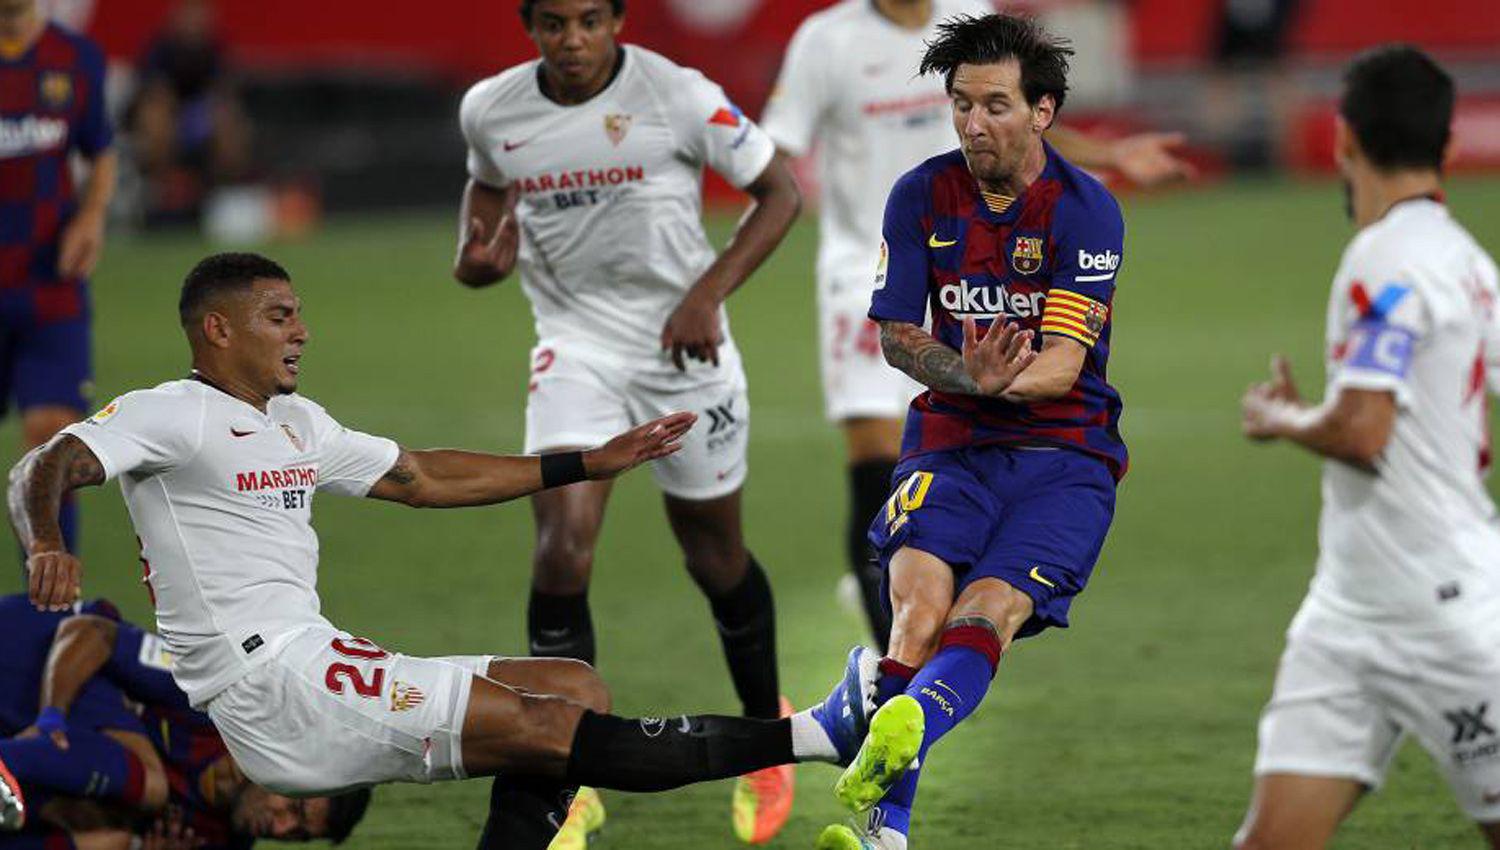 Asiacute le quedoacute la pierna a Messi despueacutes del planchazo del brasilentildeo Diego Carlos